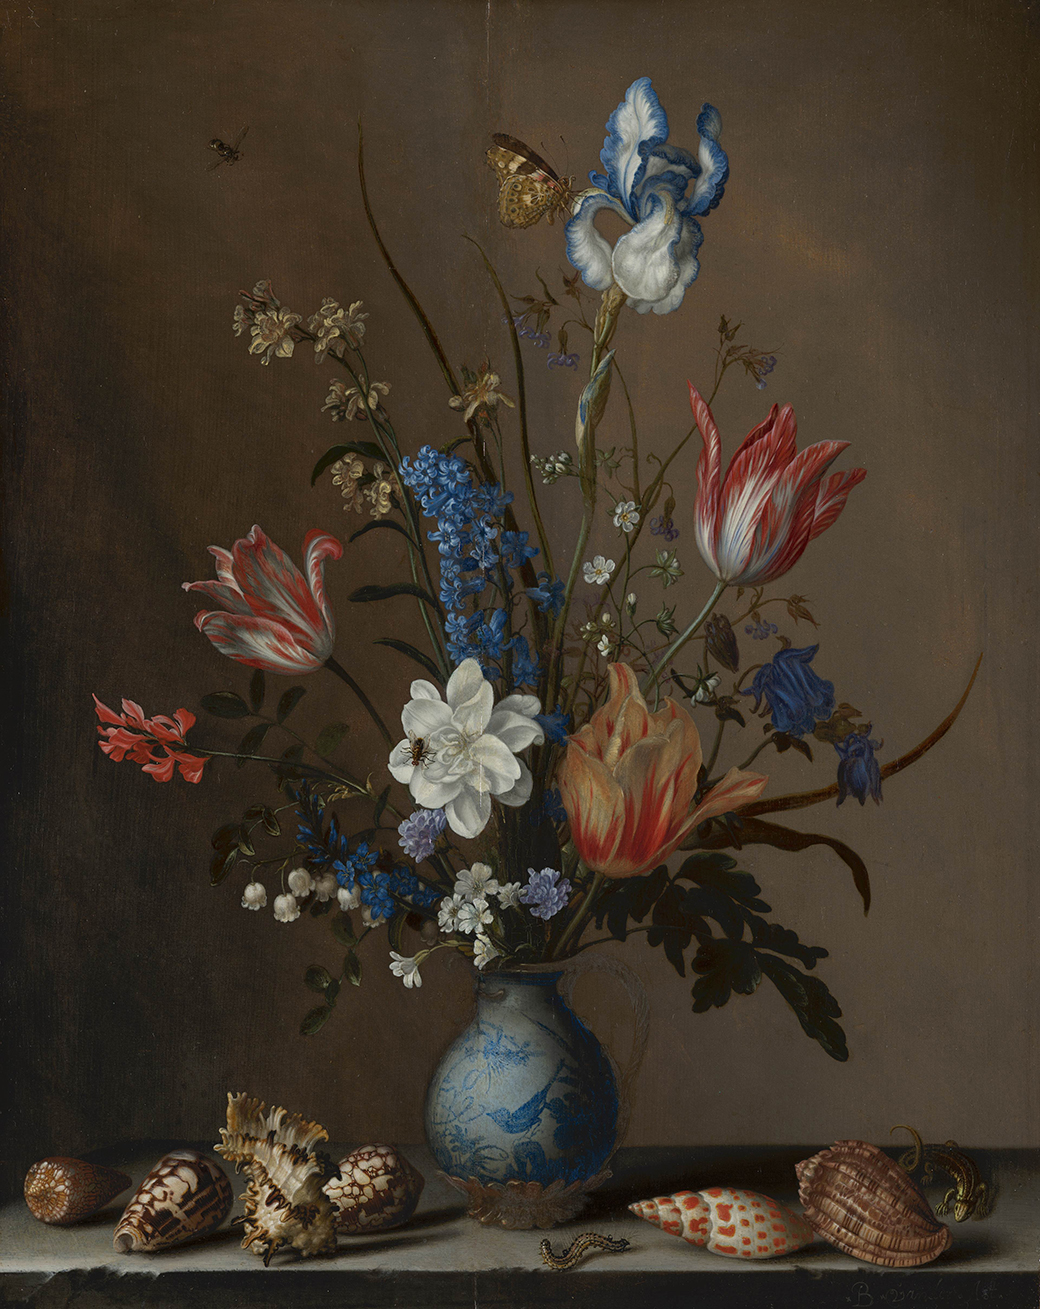 Flowers in a Wan Li Vase with Shells c1640 By Balthasar van der Ast